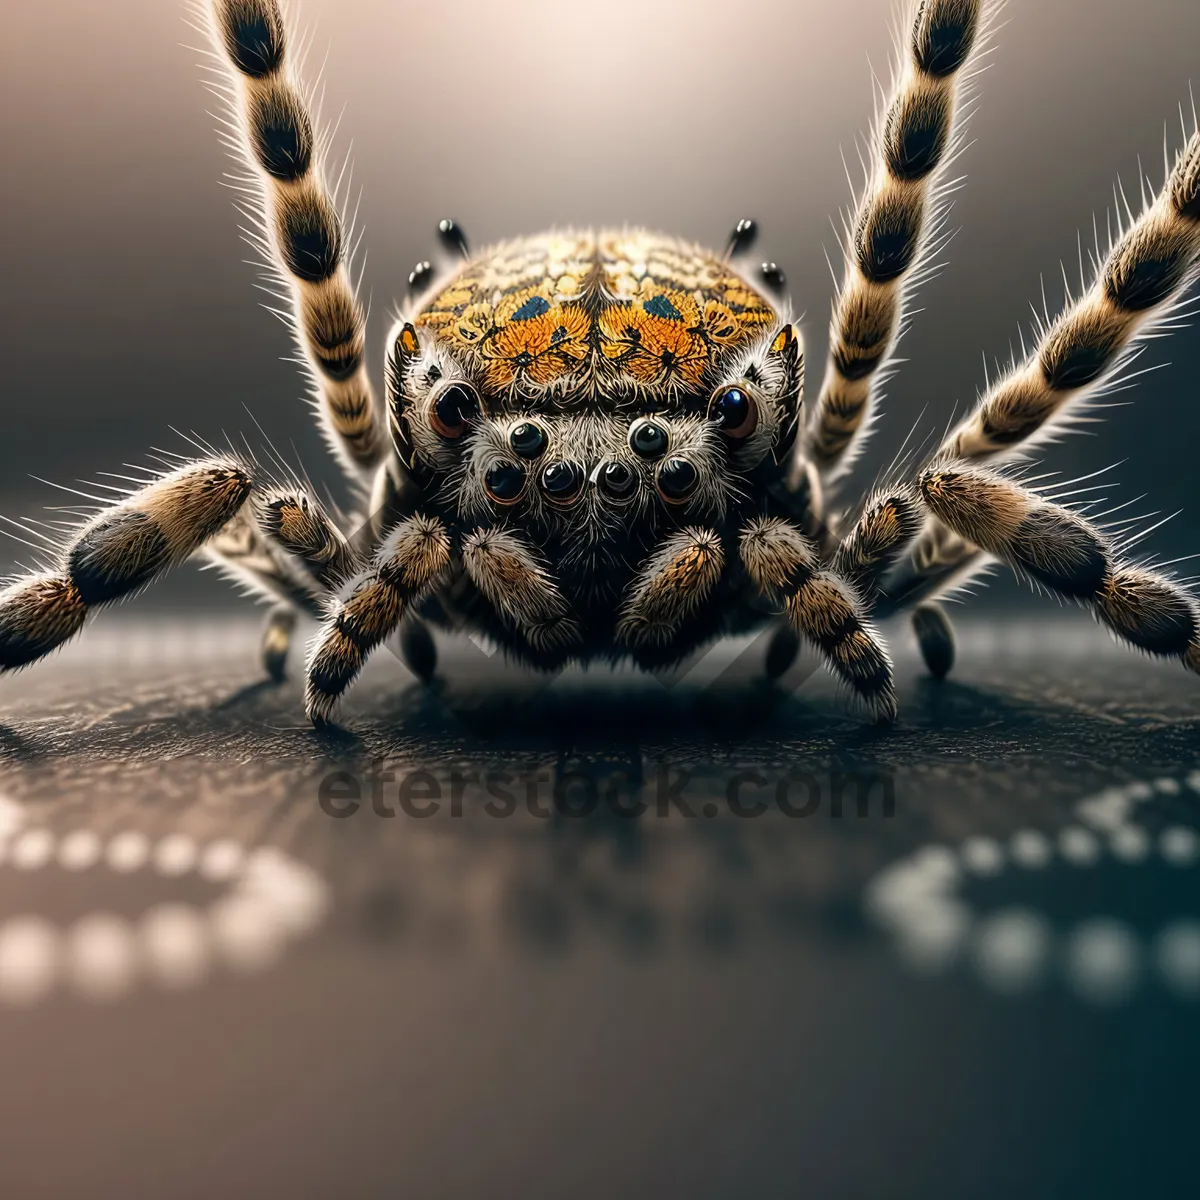 Picture of Garden Spider - Creepy Arachnid Predator